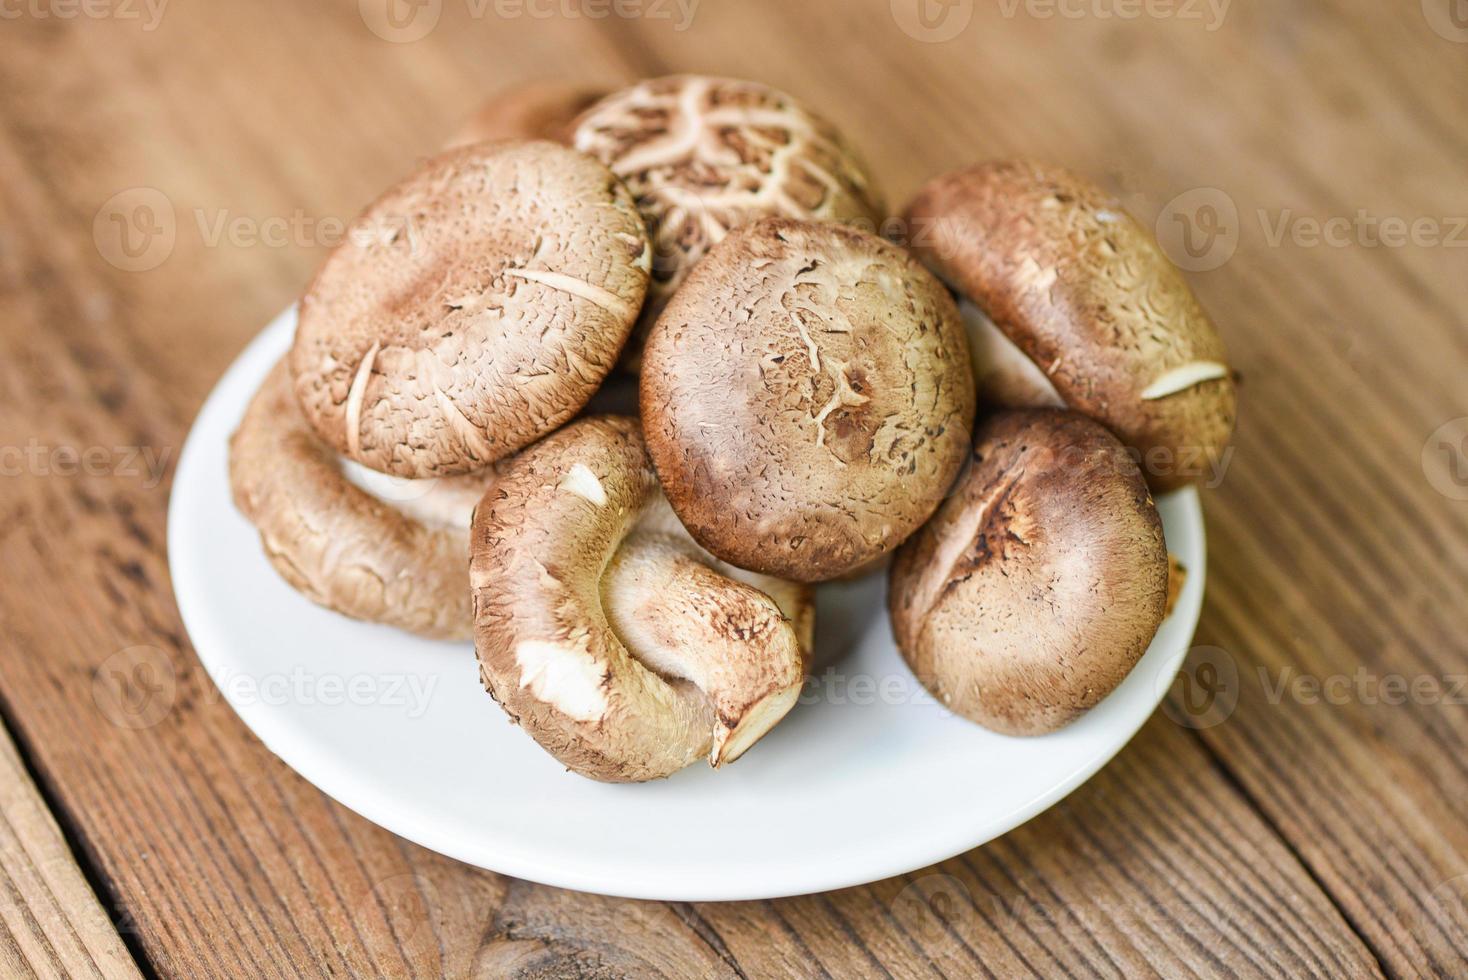 cogumelos frescos em prato branco e fundo de mesa de madeira - cogumelos shiitake foto